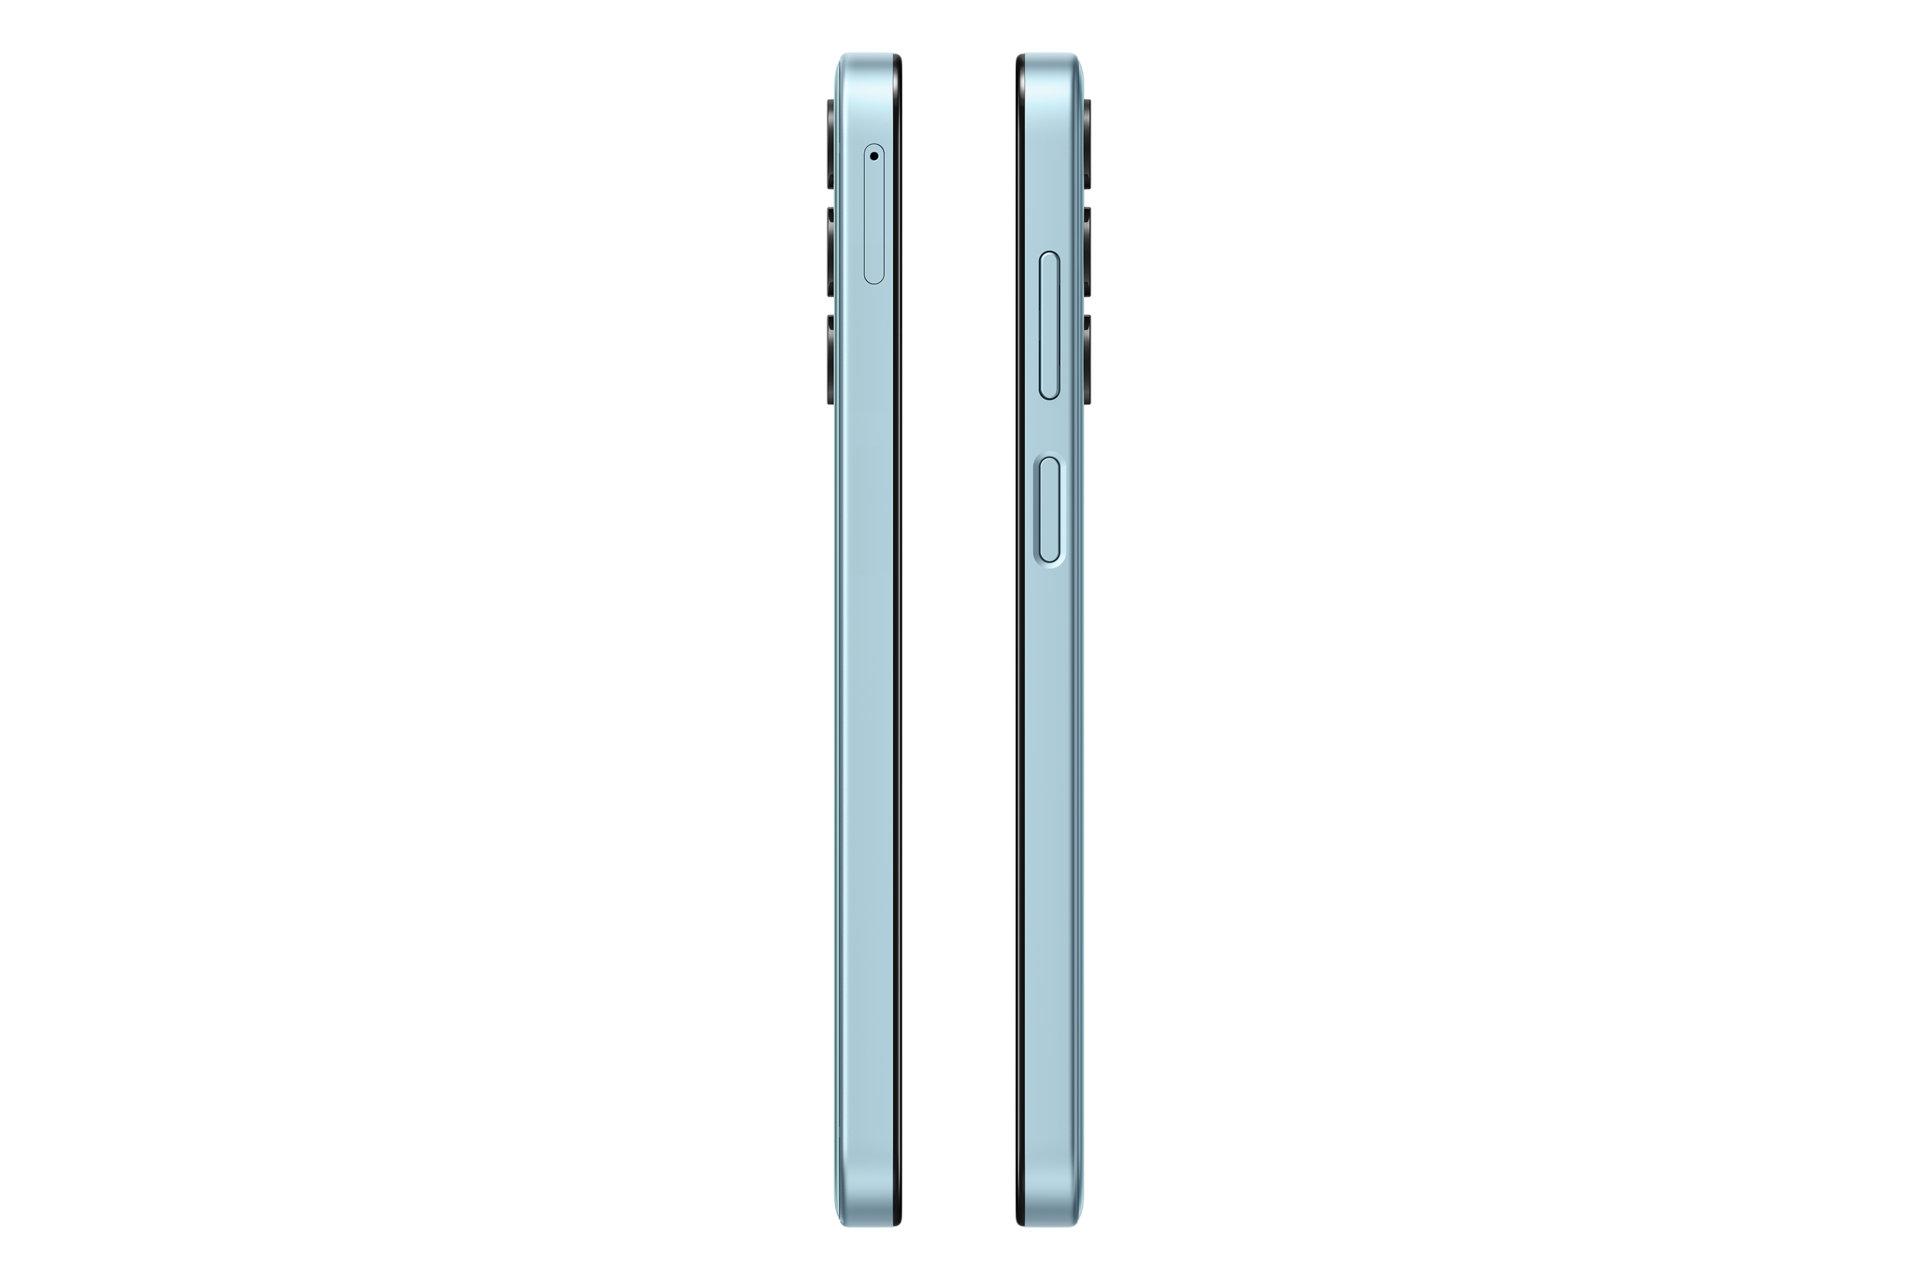 لبه های کناری گوشی موبایل گلکسی M15 سامسونگ آبی روشن / Samsung Galaxy M15